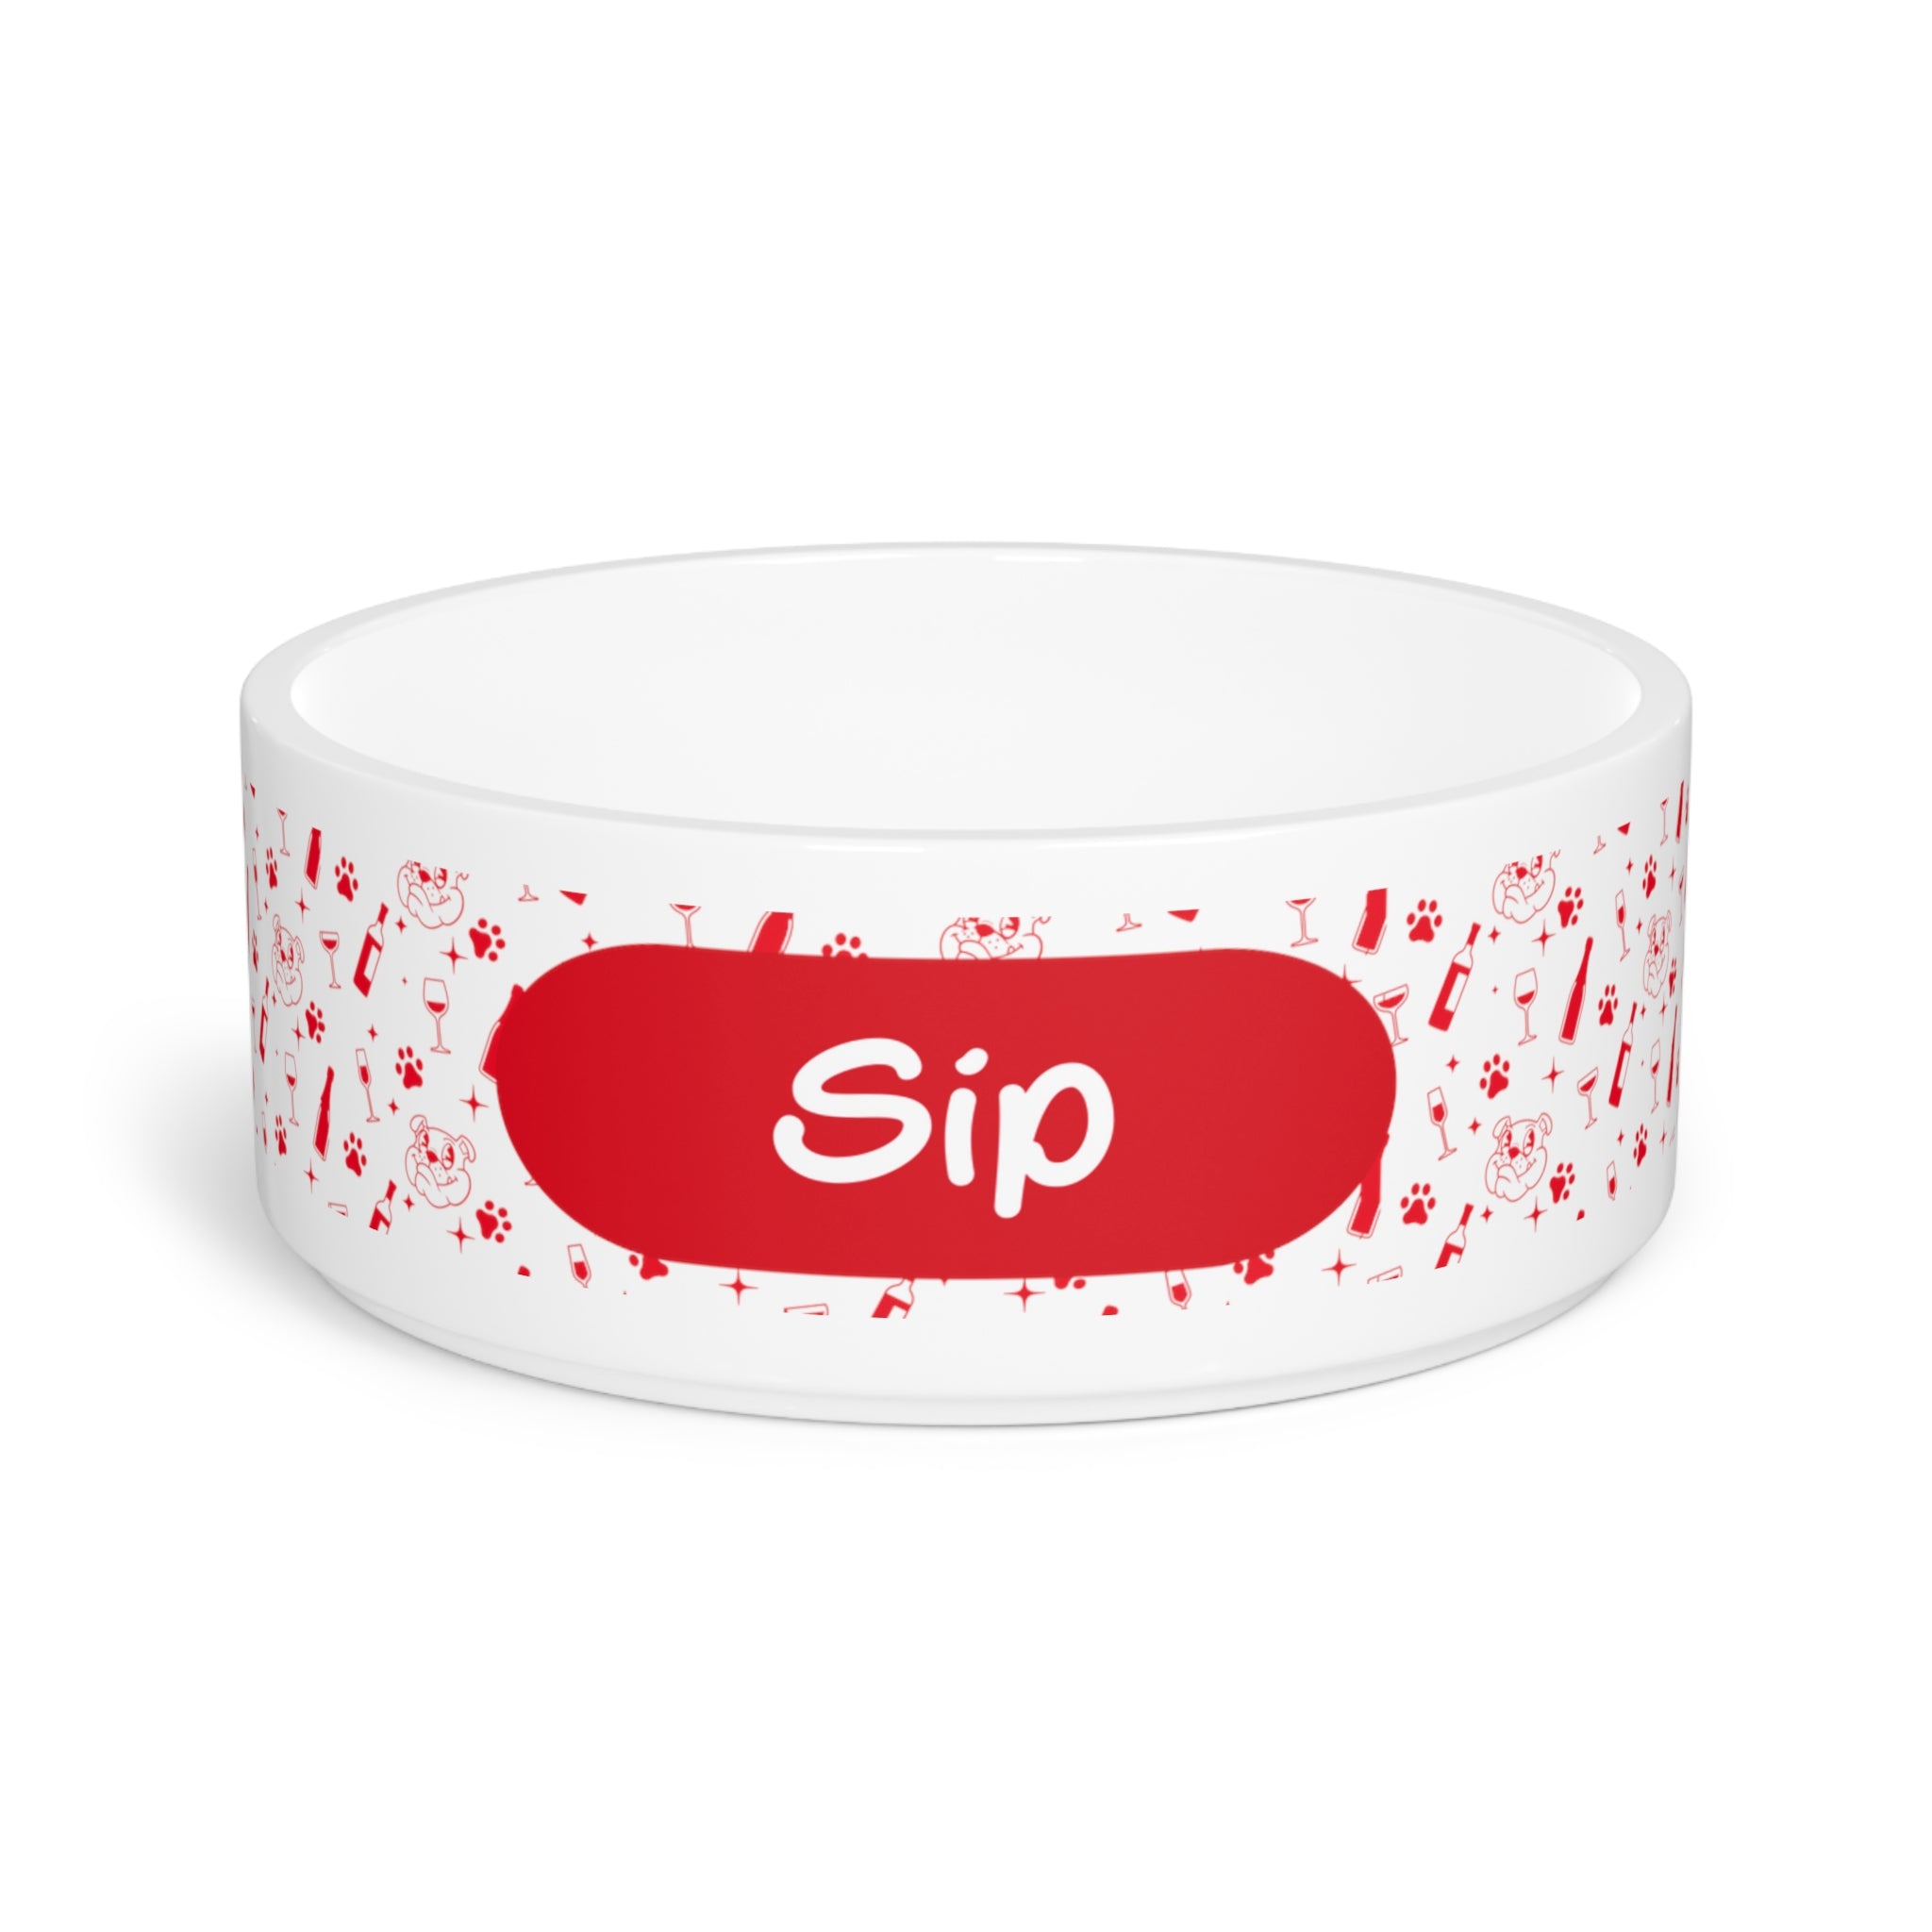 Tipsy Bully "Sip" Dog Water Bowl (Red)